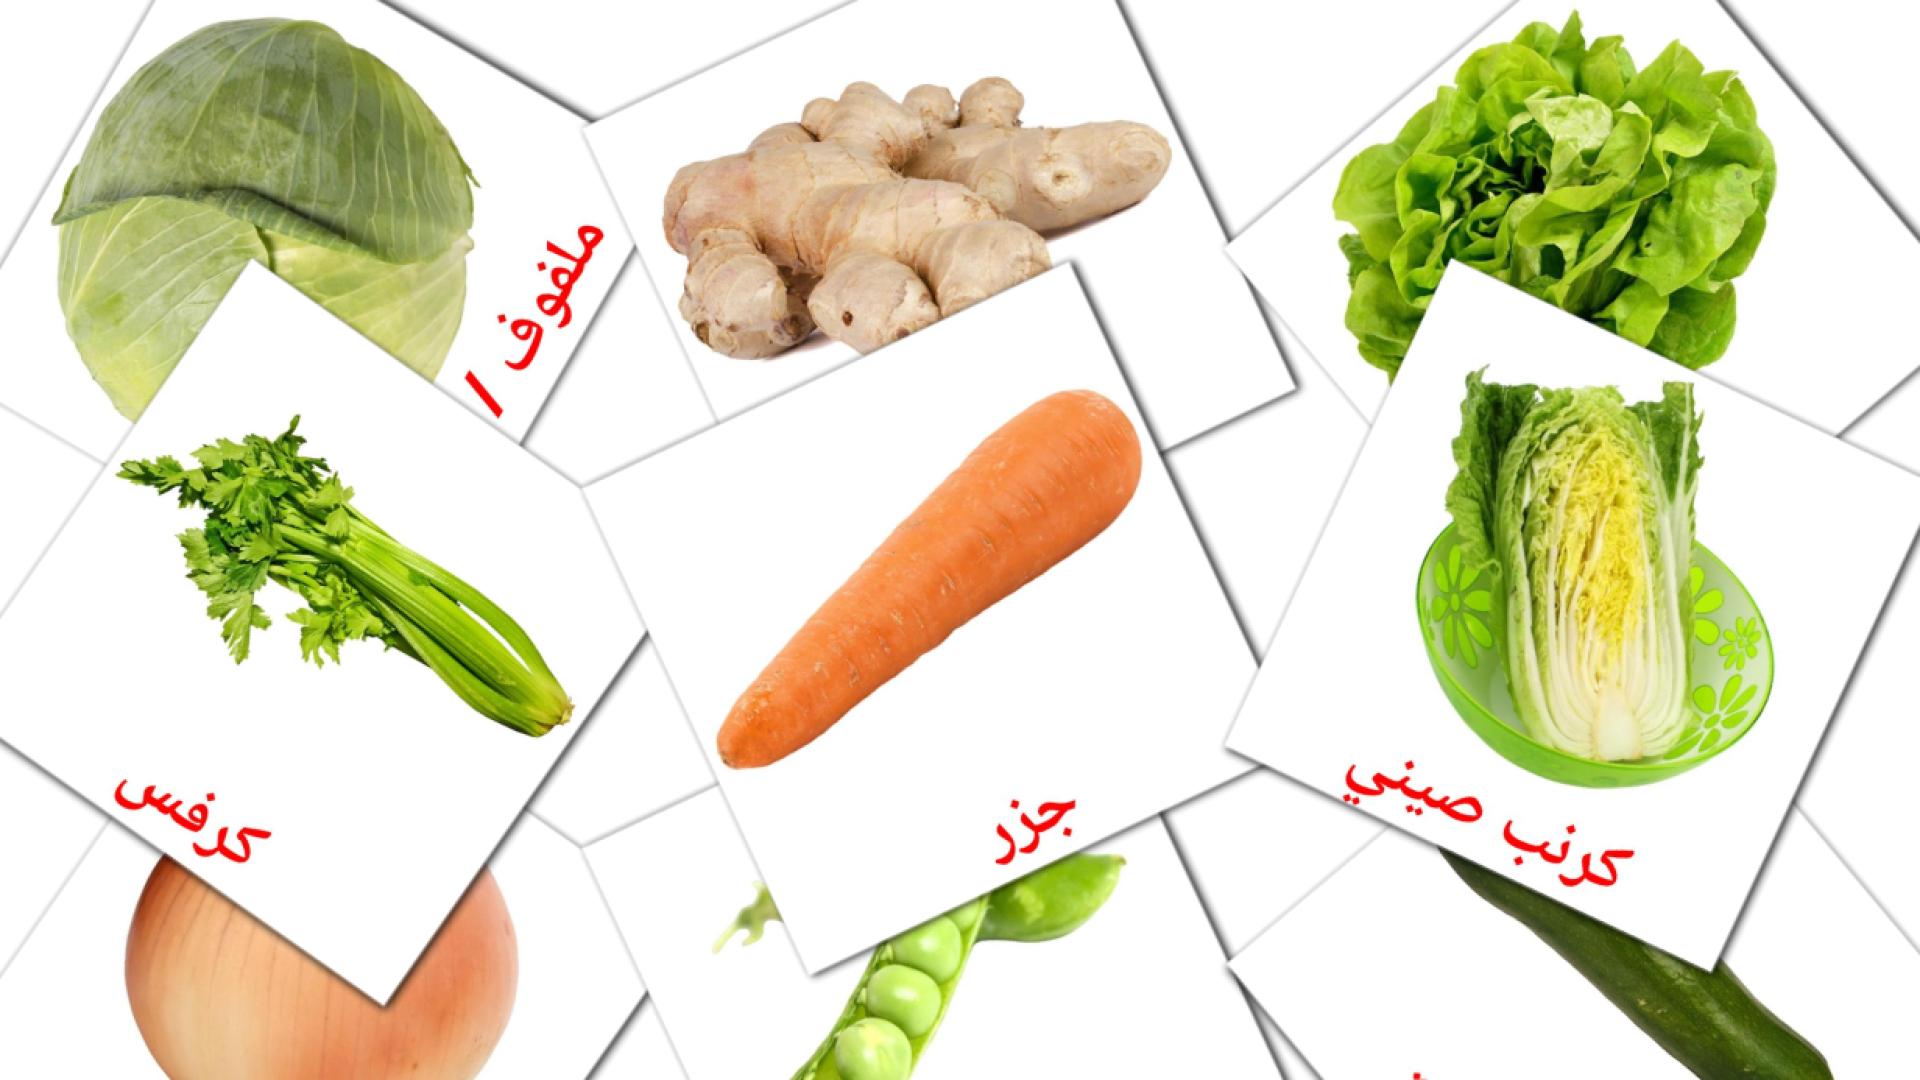 La verdura - Schede di vocabolario arabo